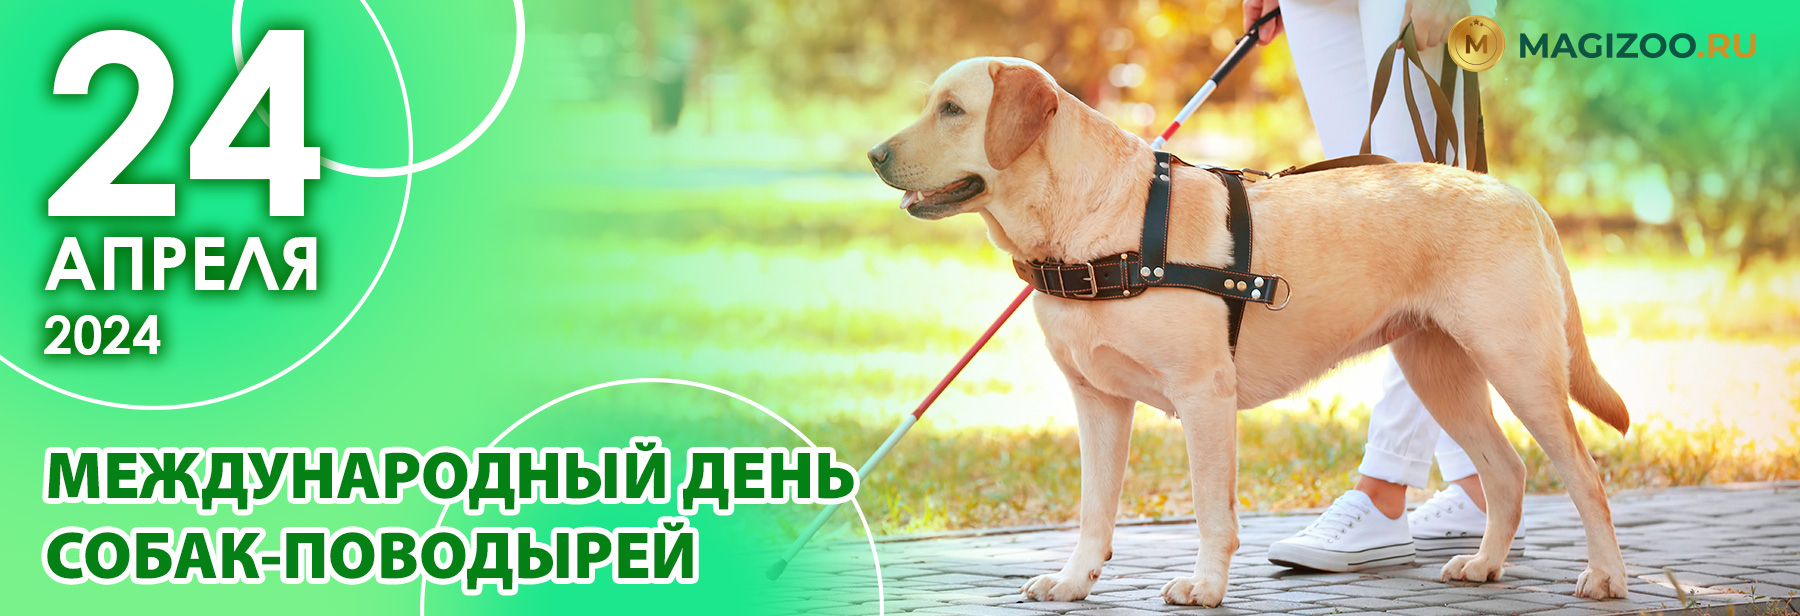 24 апреля - Международный День Собак-Поводырей!